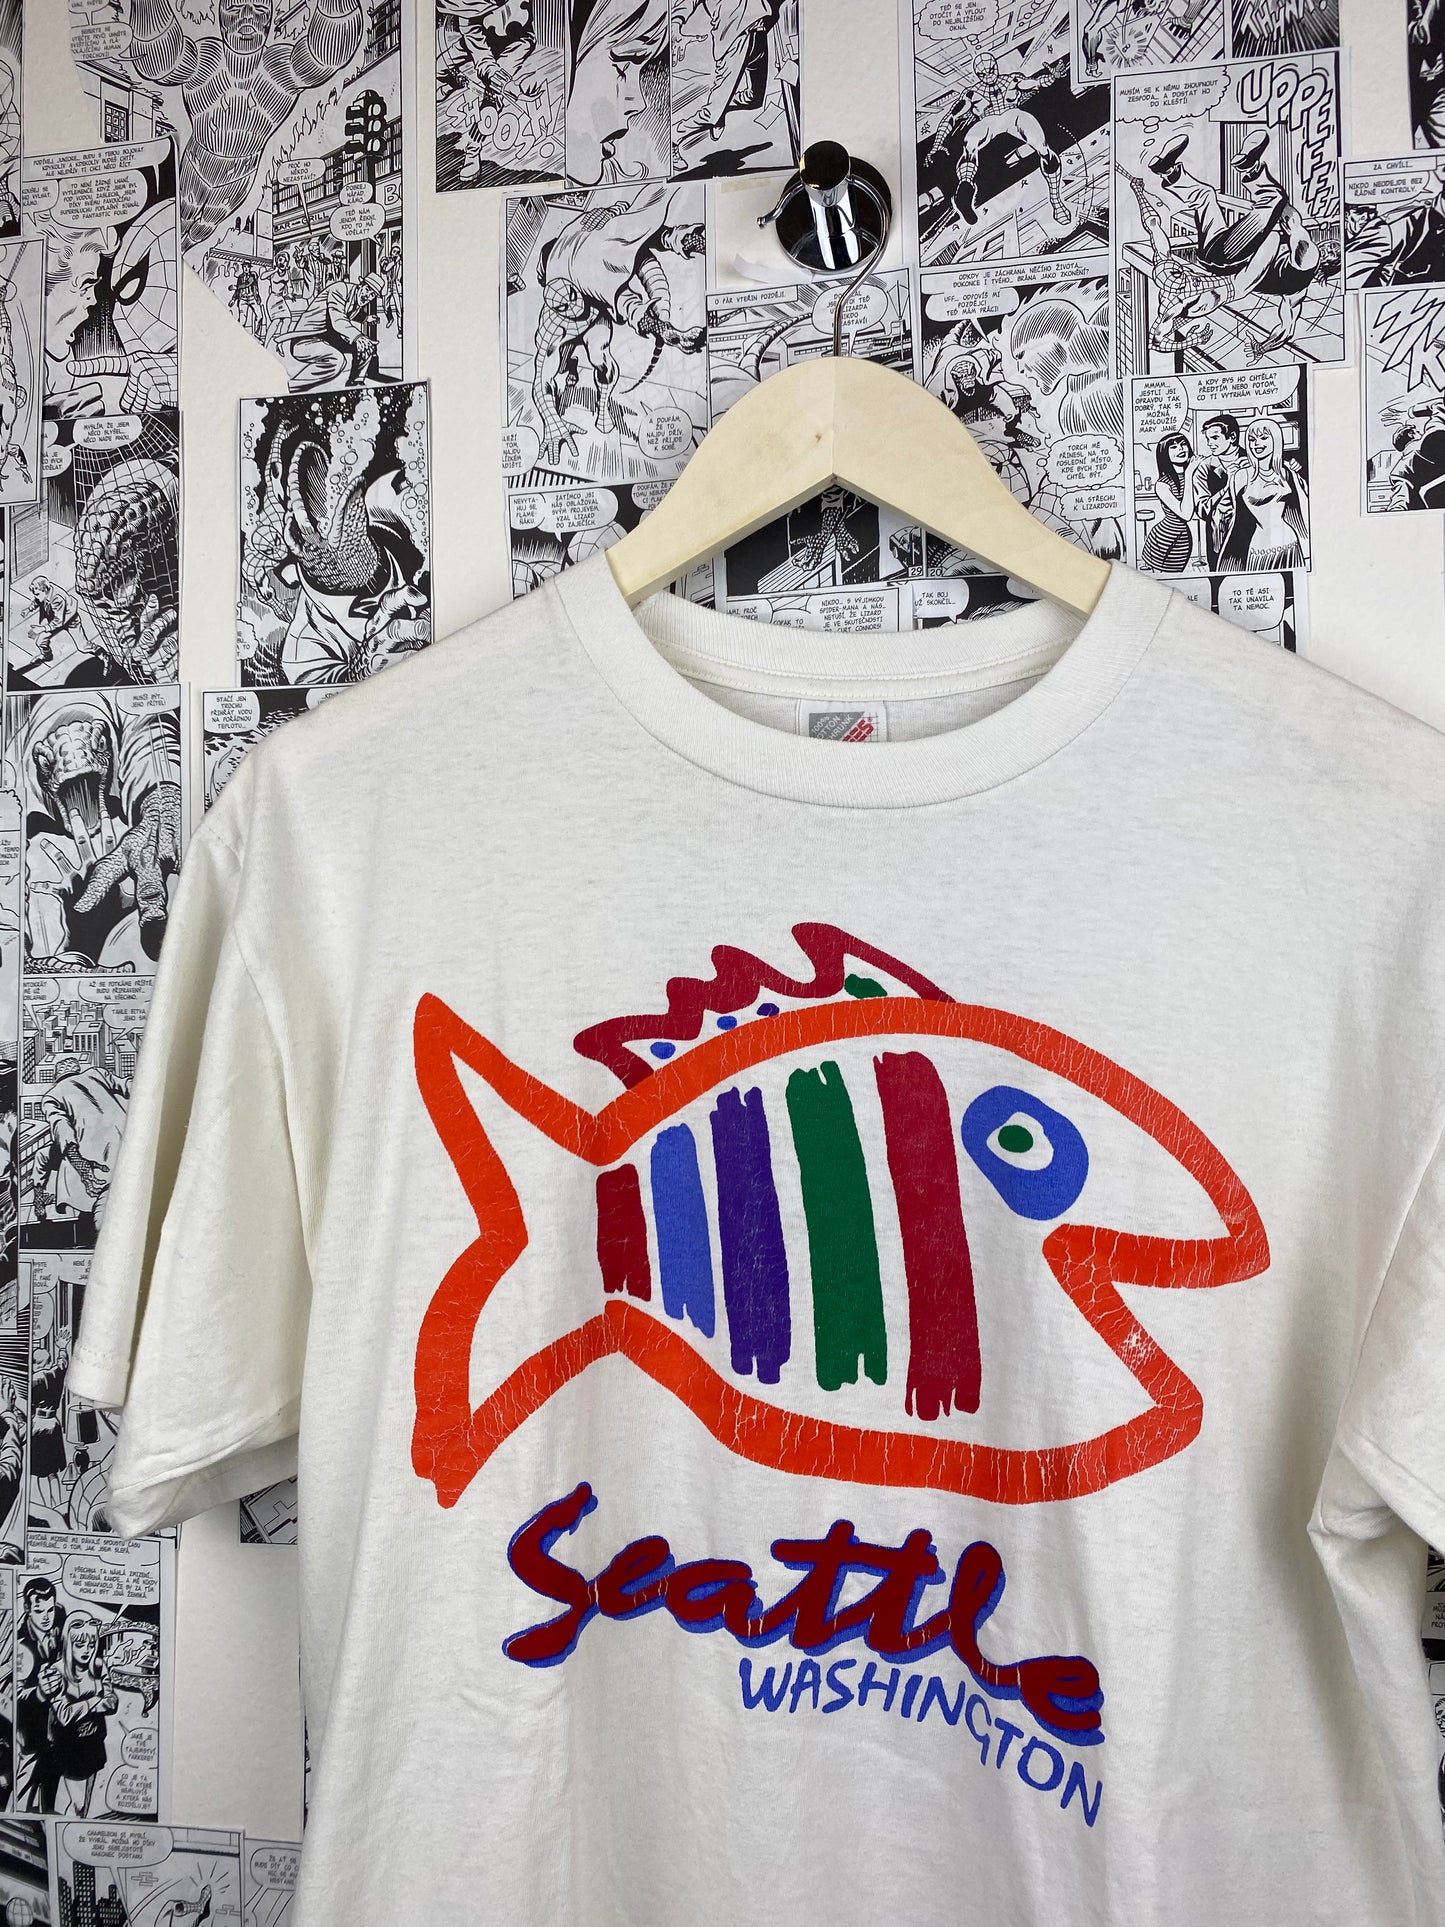 Vintage Seattle 90s t-shirt - size L